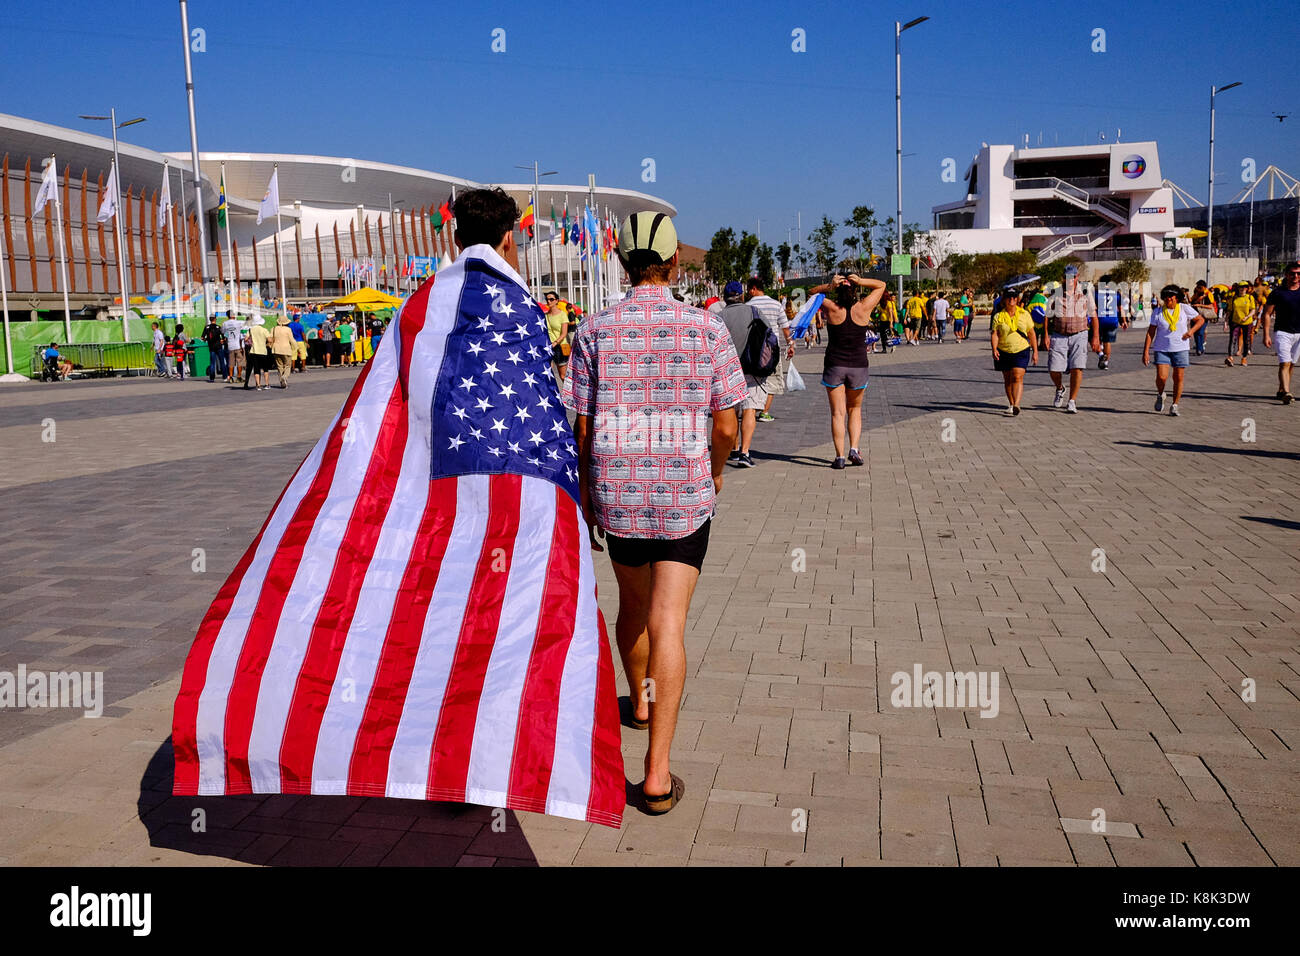 La gente en los Juegos Olímpicos de Río en 2016 cubrió con la bandera norteamericana, animando a América durante los juegos Foto de stock